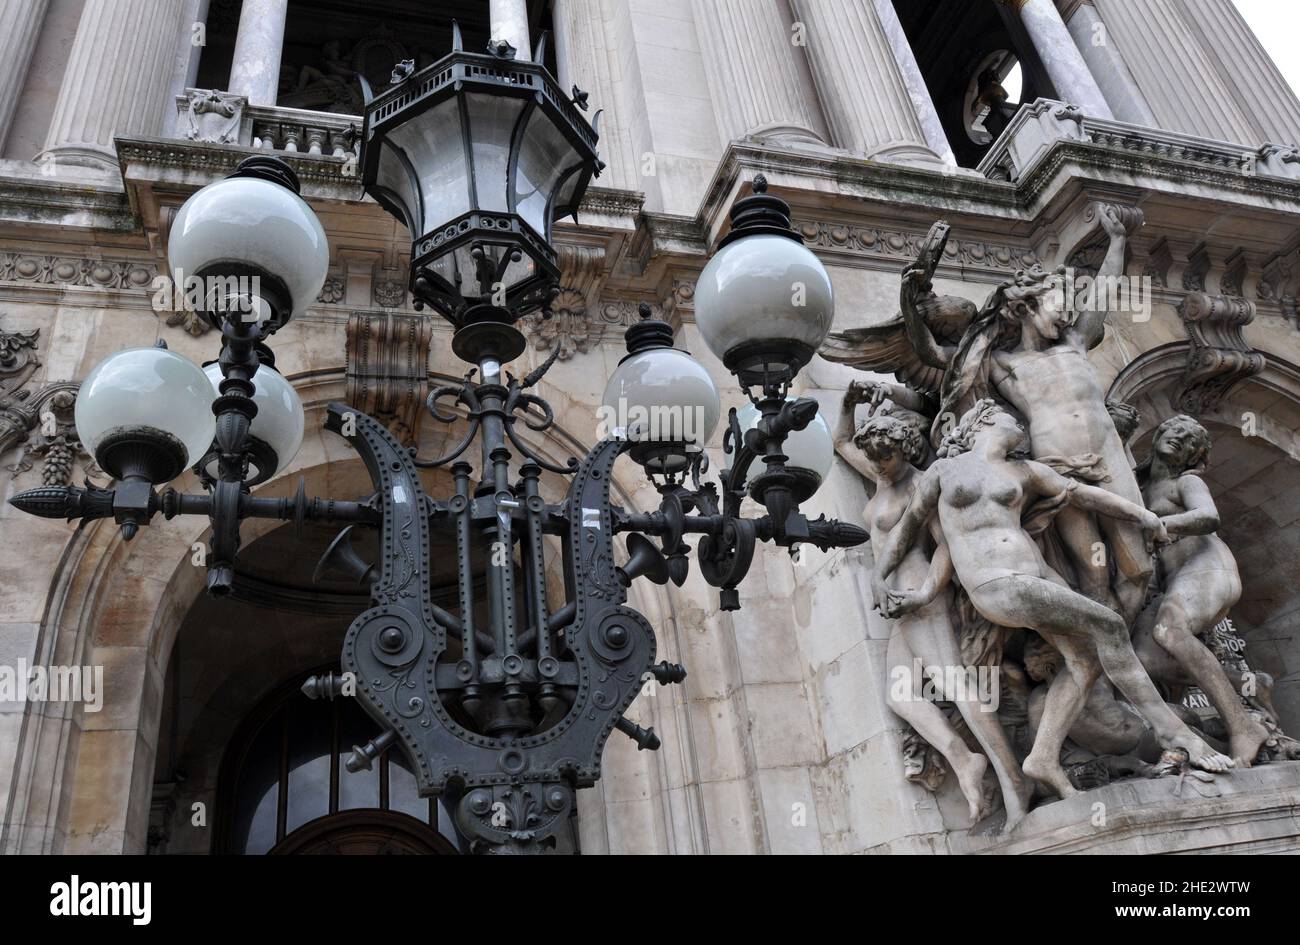 Vor dem Pariser Opernhaus Palais Garnier steht neben der Kopie der Skulptur La Danse von Jean-Baptiste Carpeaux ein reich verzierter Lampenpfosten. Stockfoto